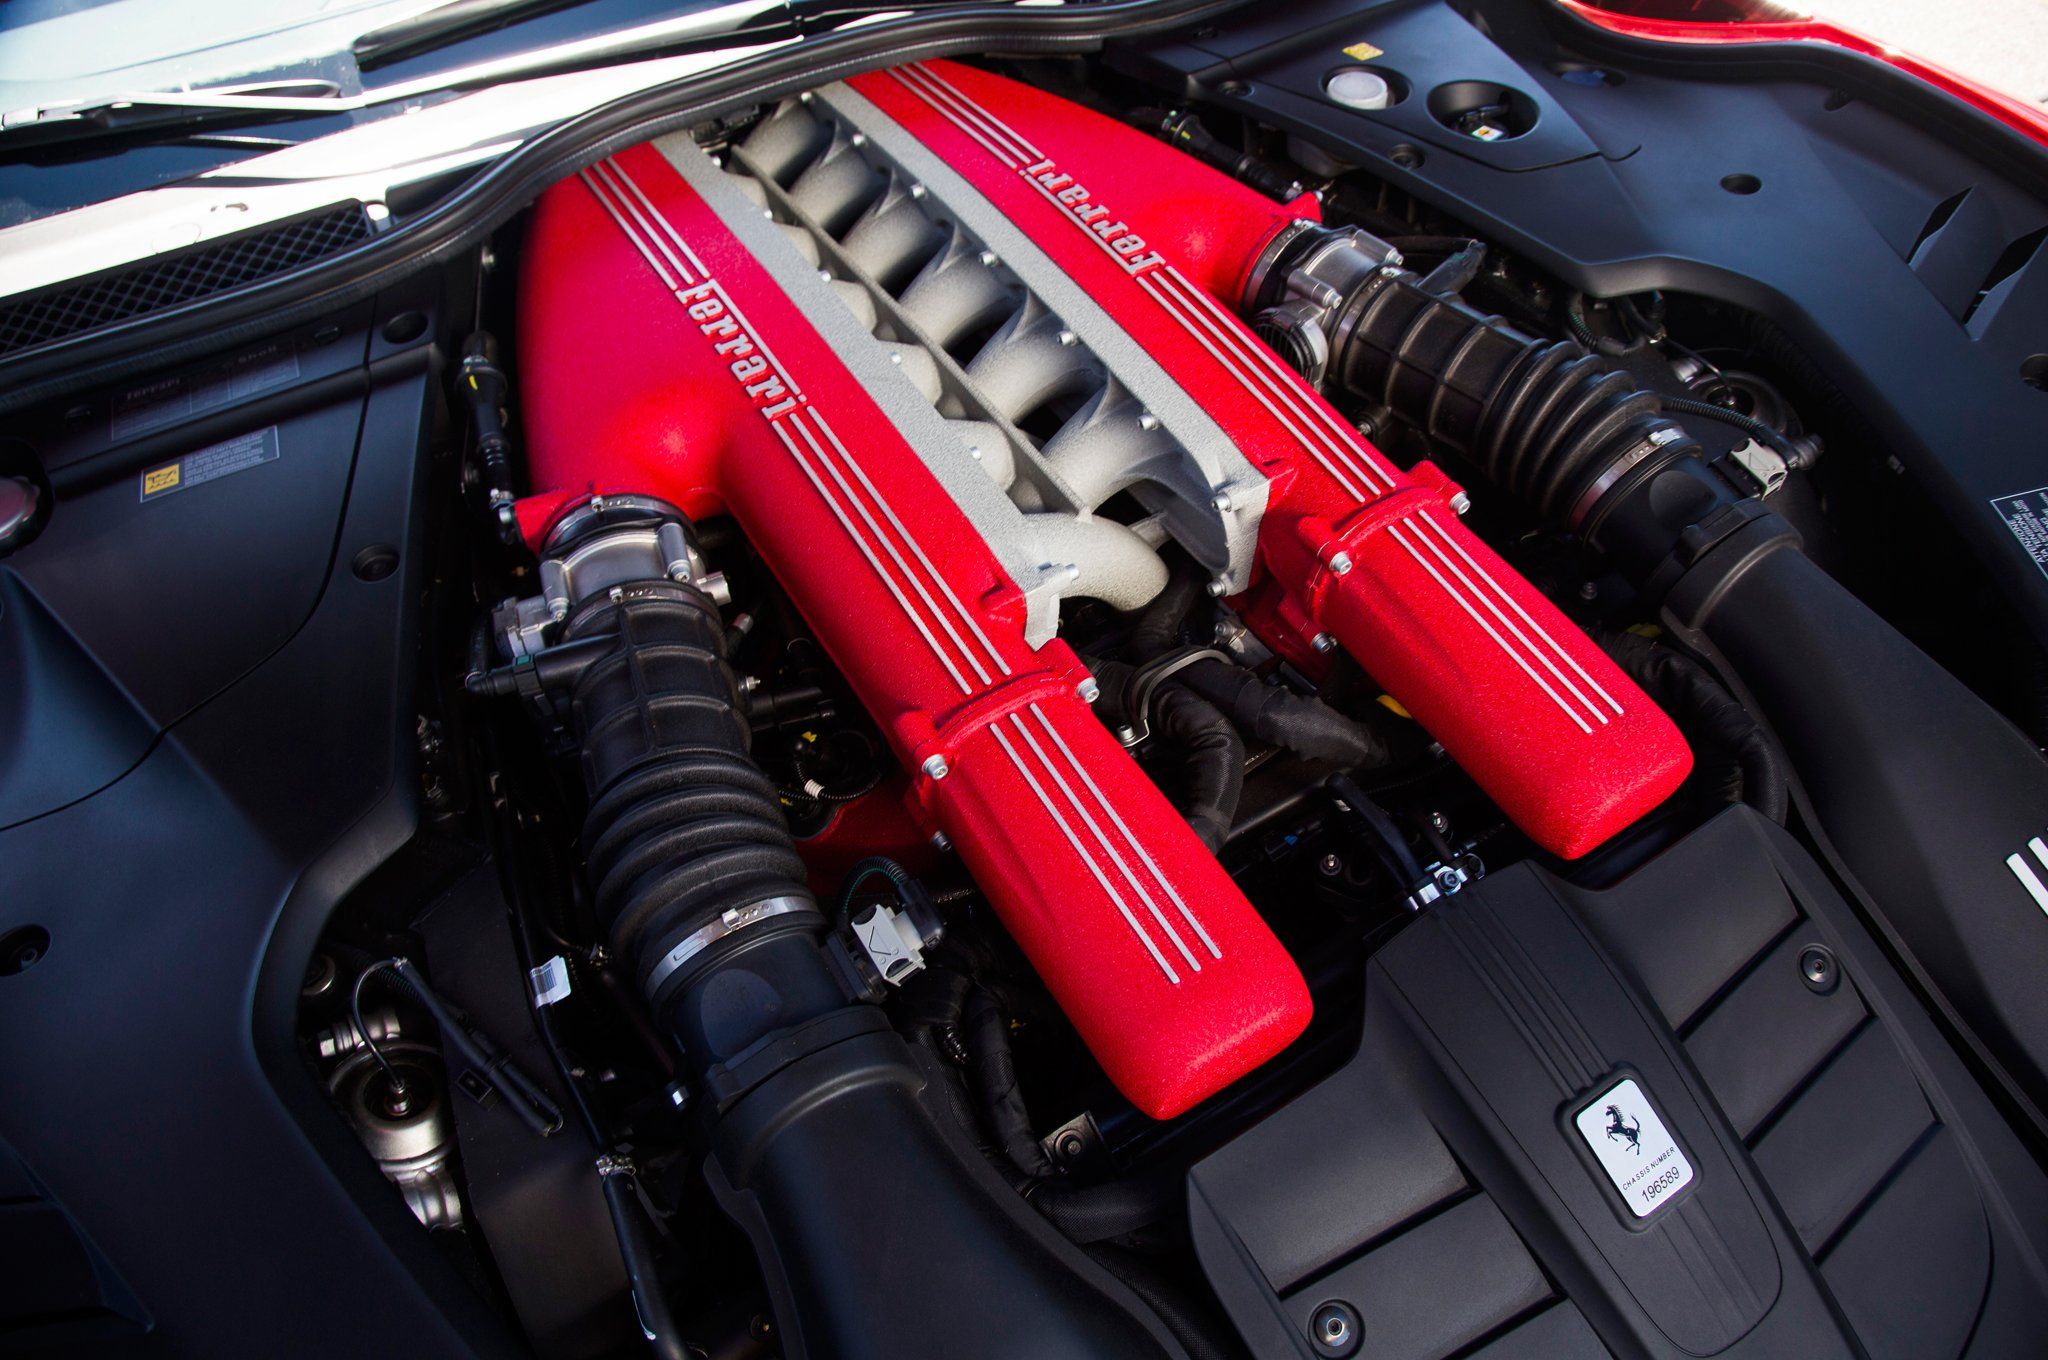 Ferrari v12 engine